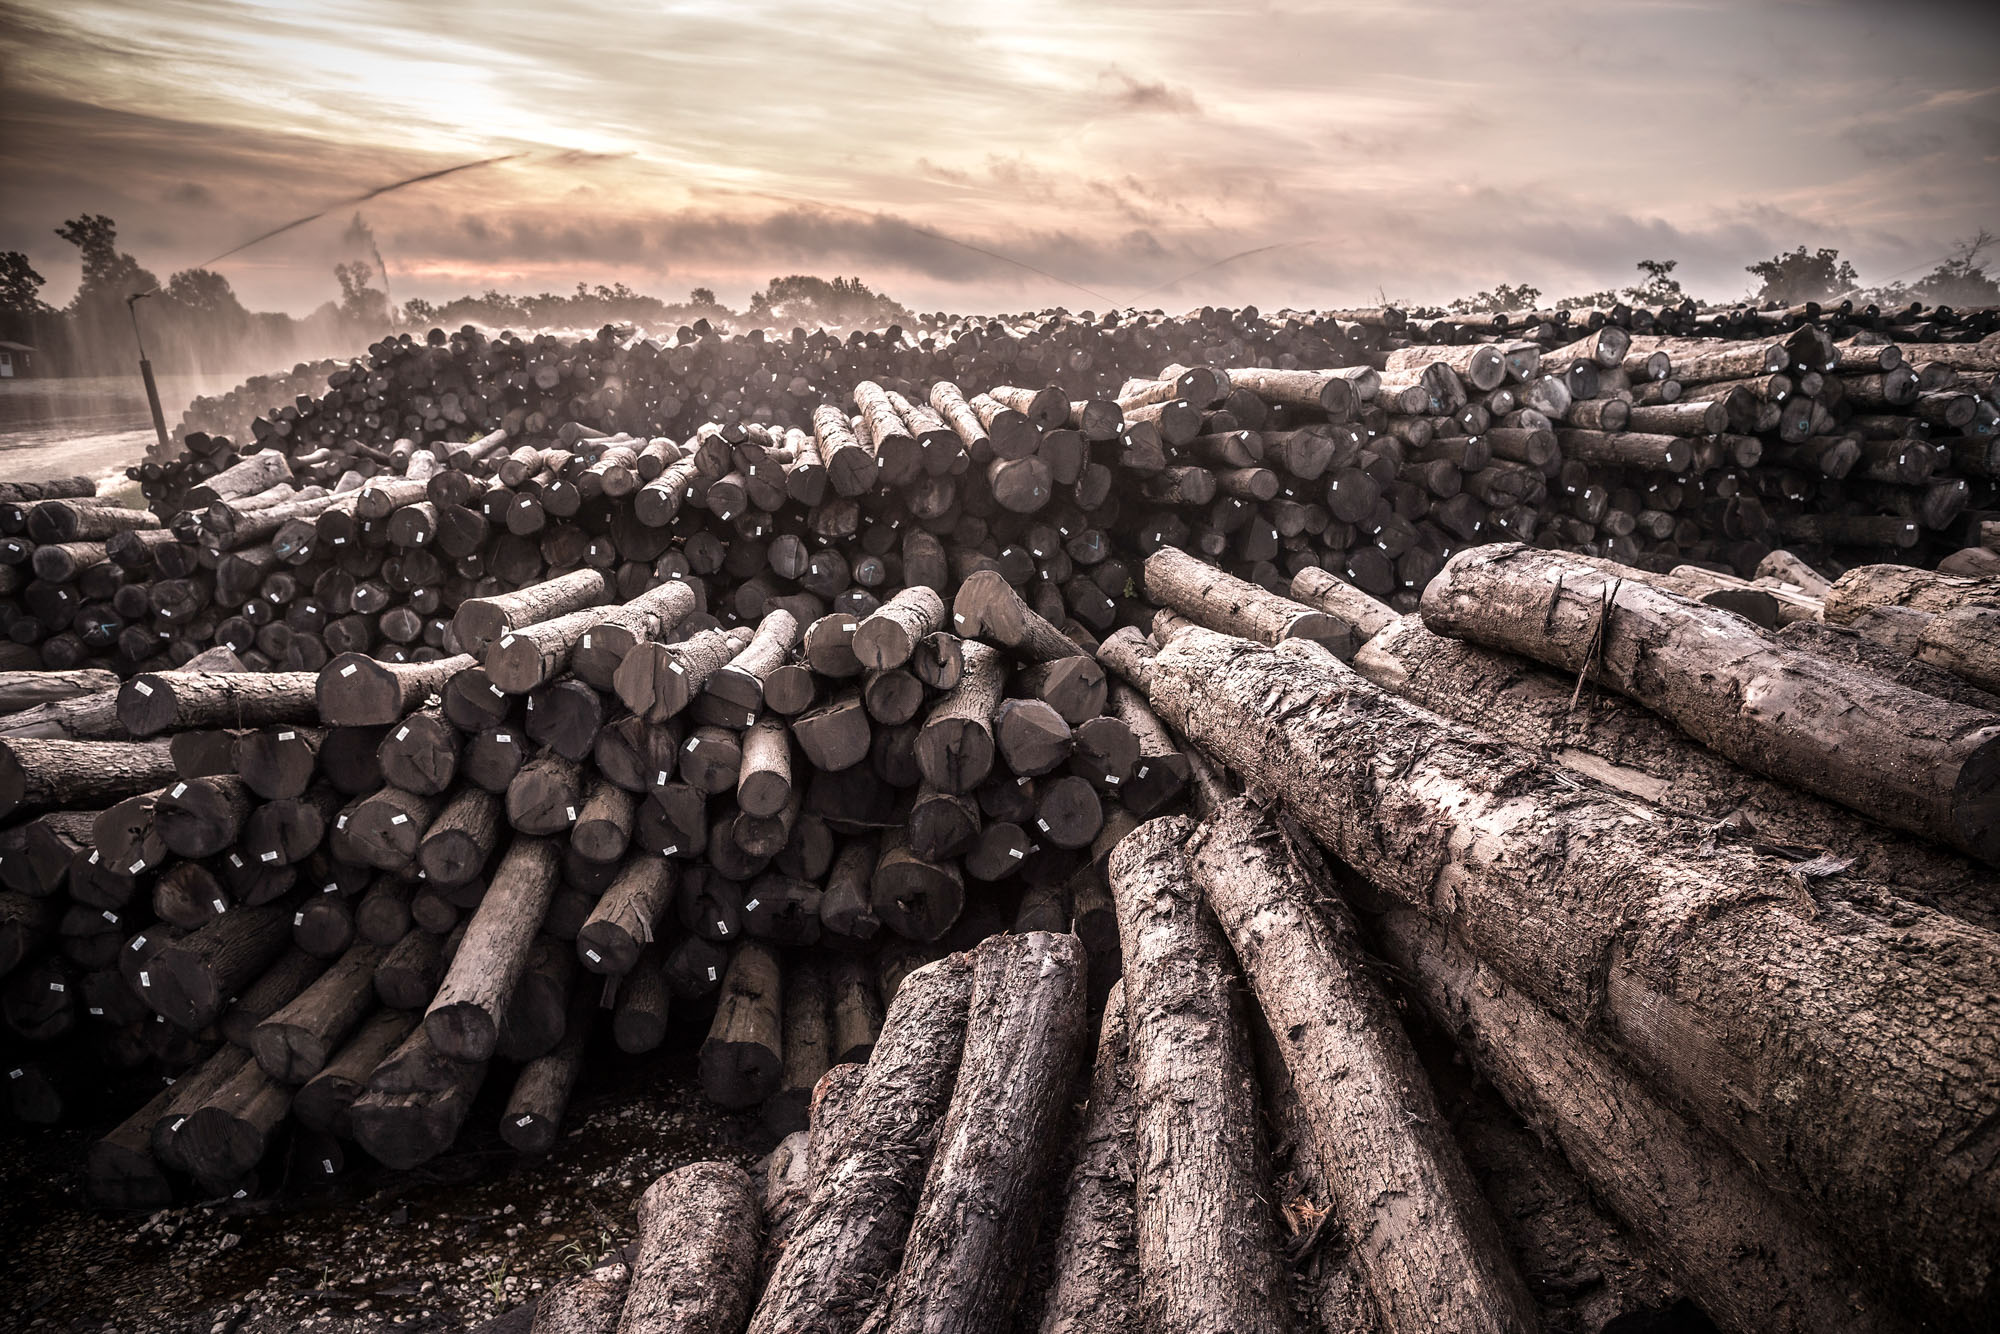 white oak logs at sunset seasoning for whiskey barrel staves